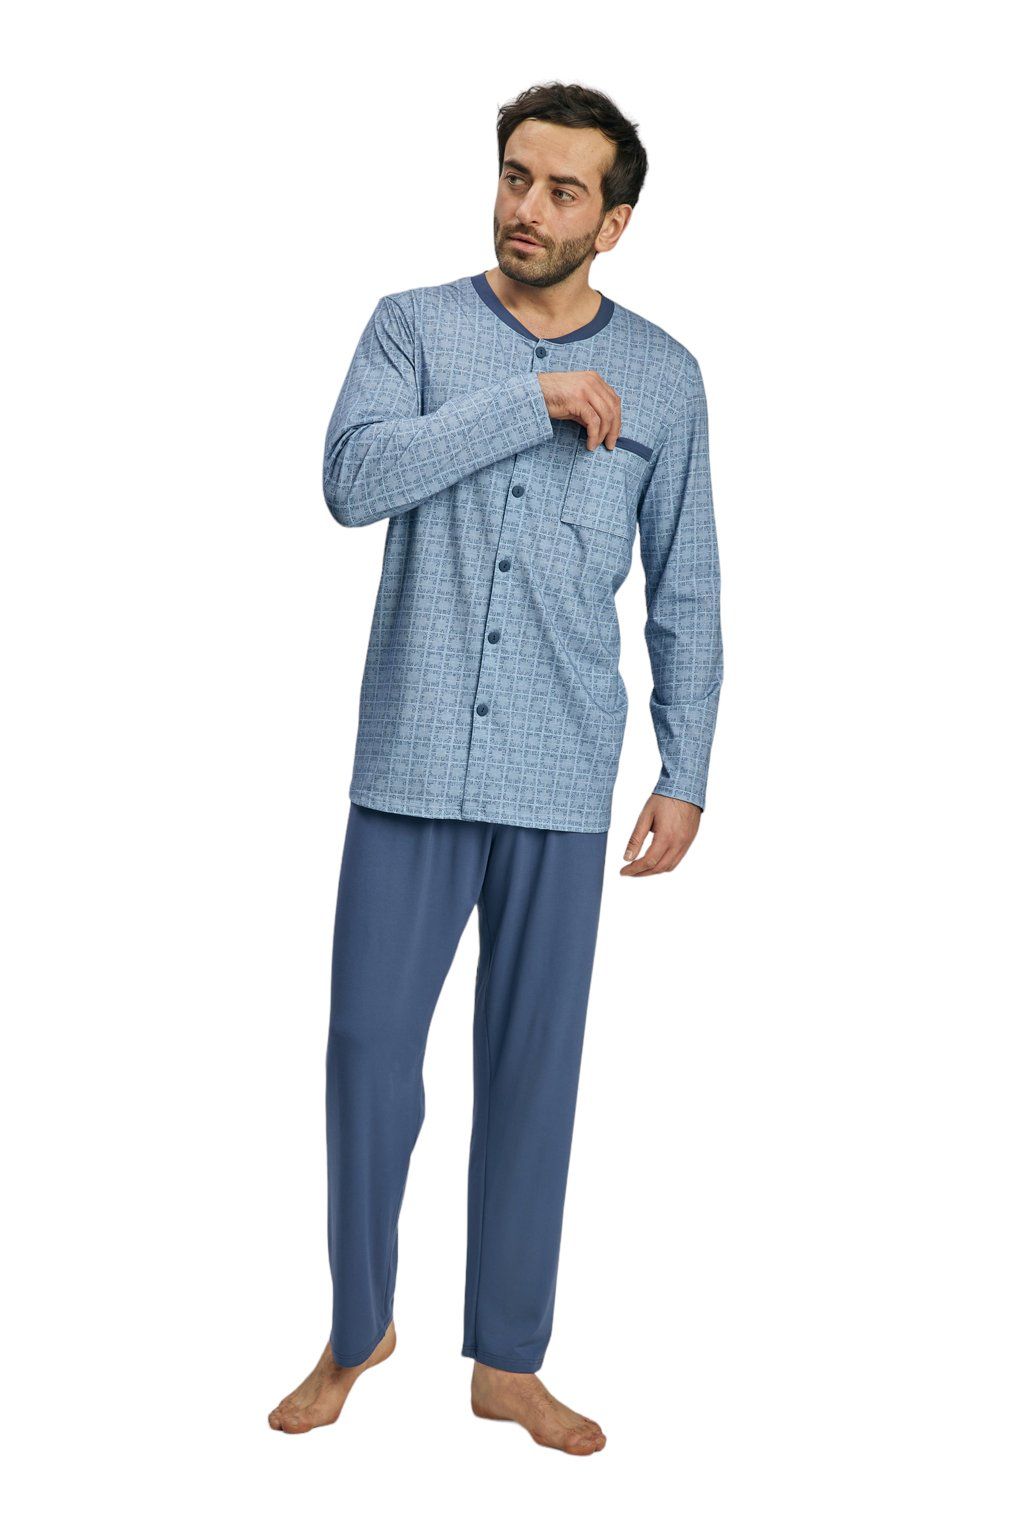 Pánské pyžamo s dlouhým rukávem, 204140 416, modrá - Velikost XXL Wadima